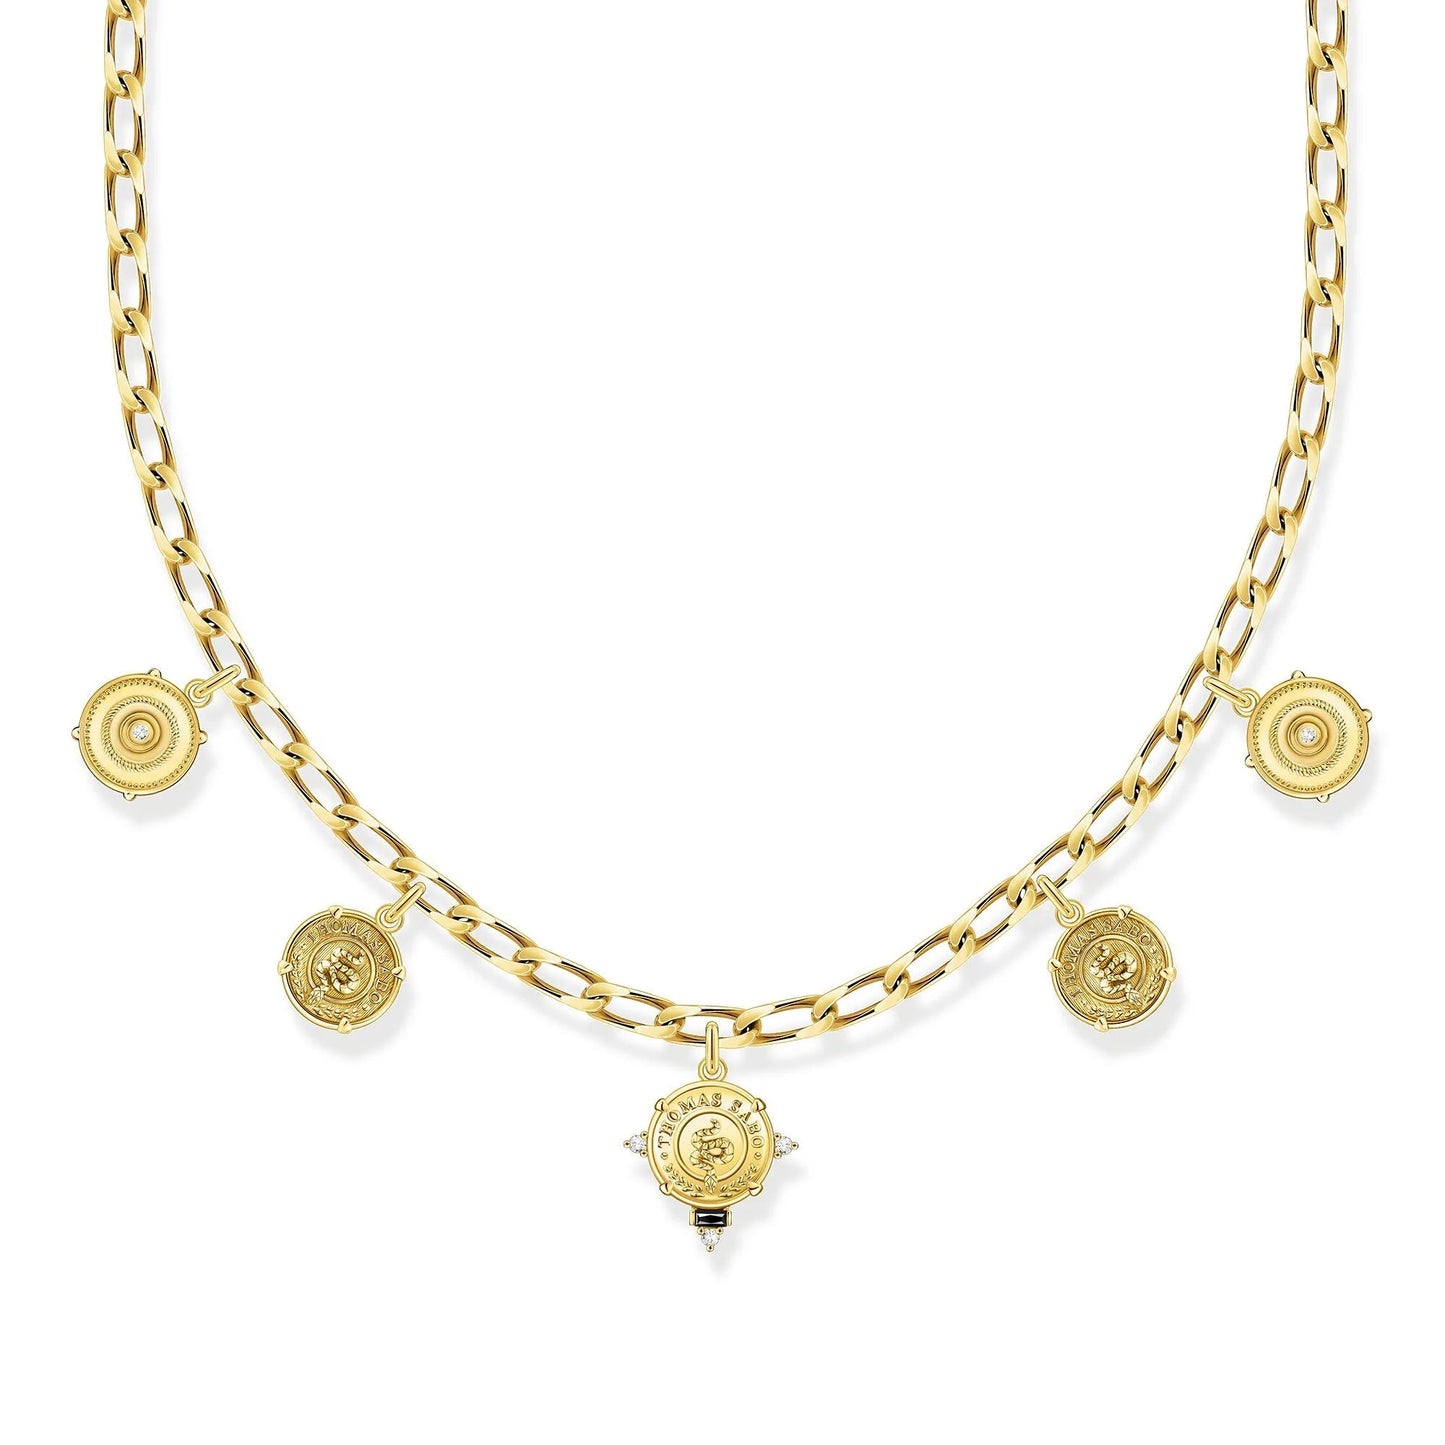 THOMAS SABO Iconic Symbols Gold Necklace